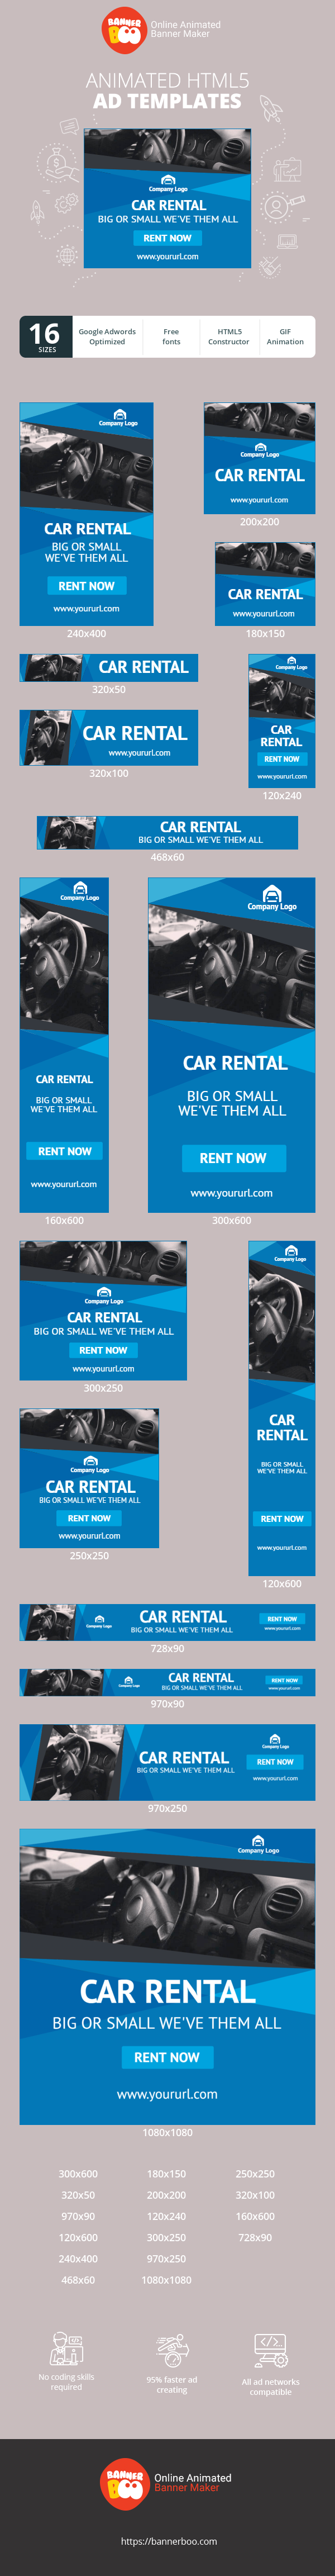 Шаблон рекламного банера — Car Rental — Big or Small We've Them All!